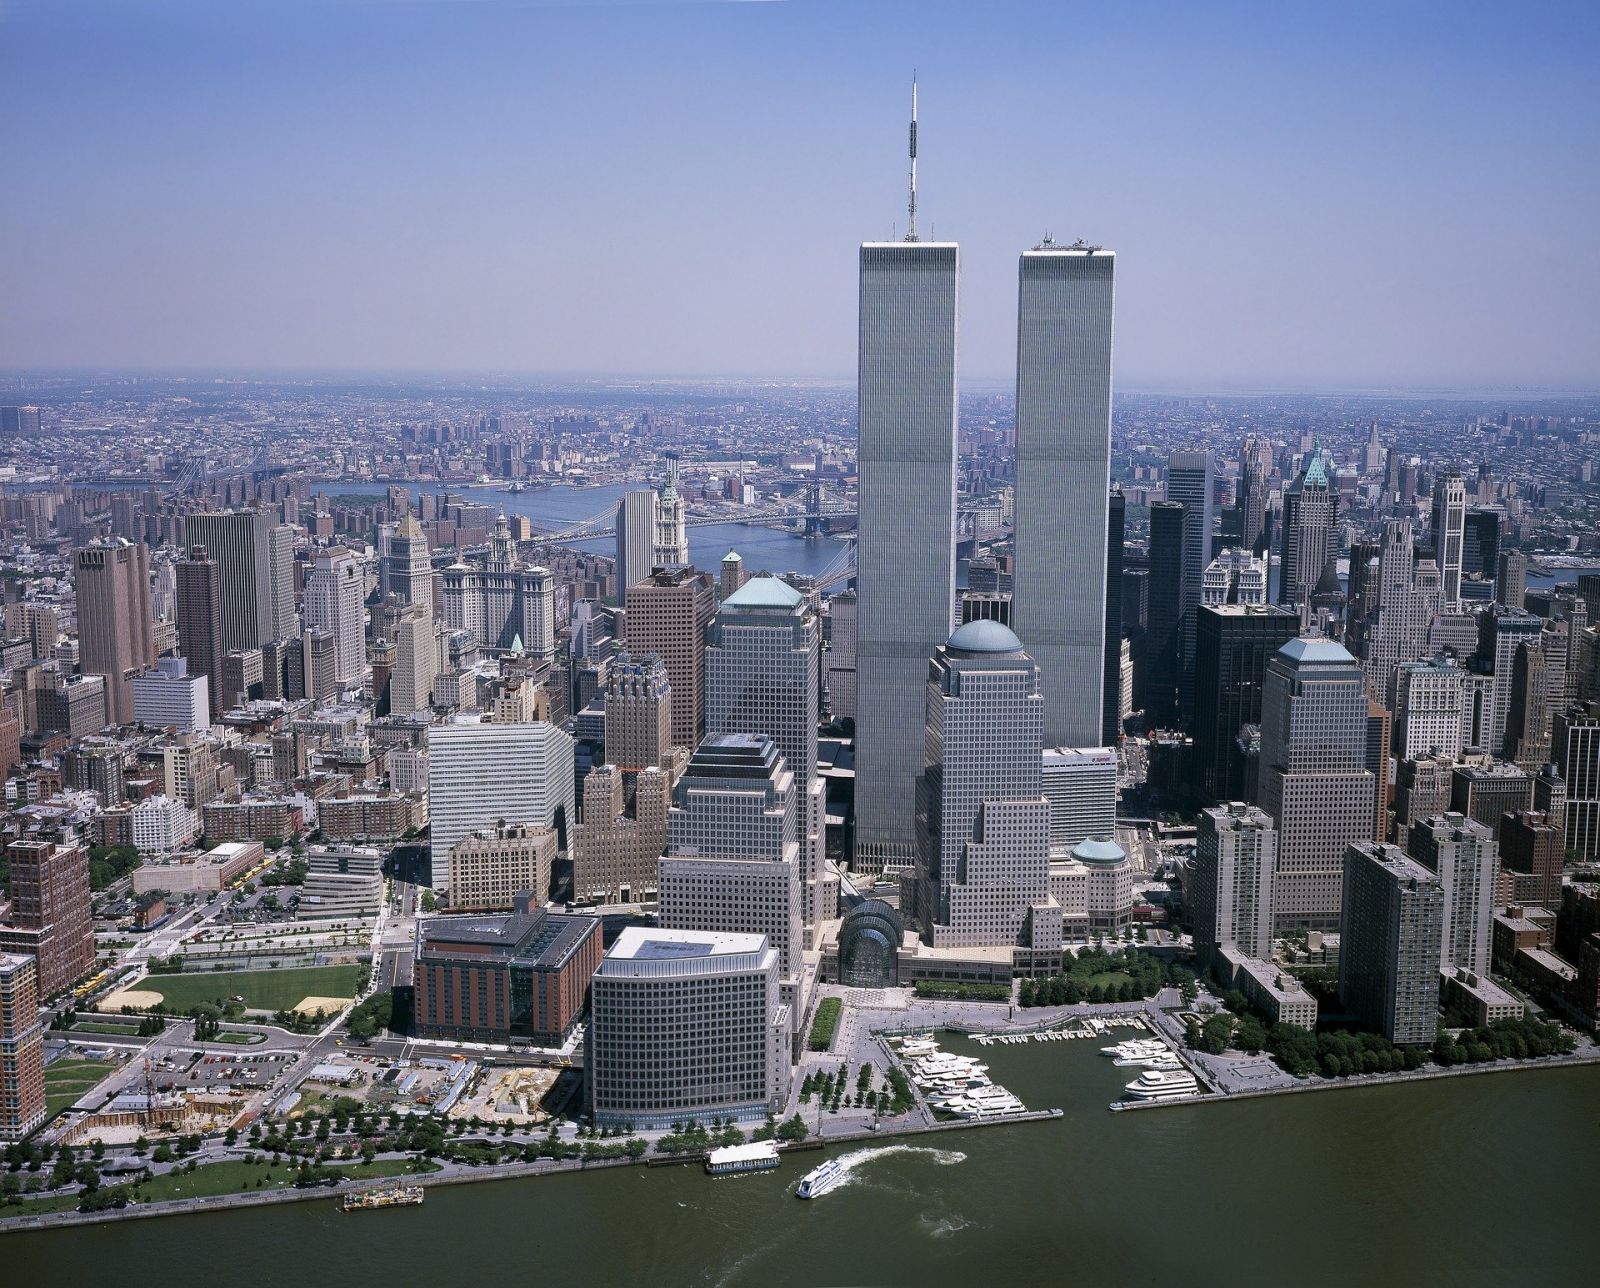 9-11-2001 De horoscoop van New York WTC